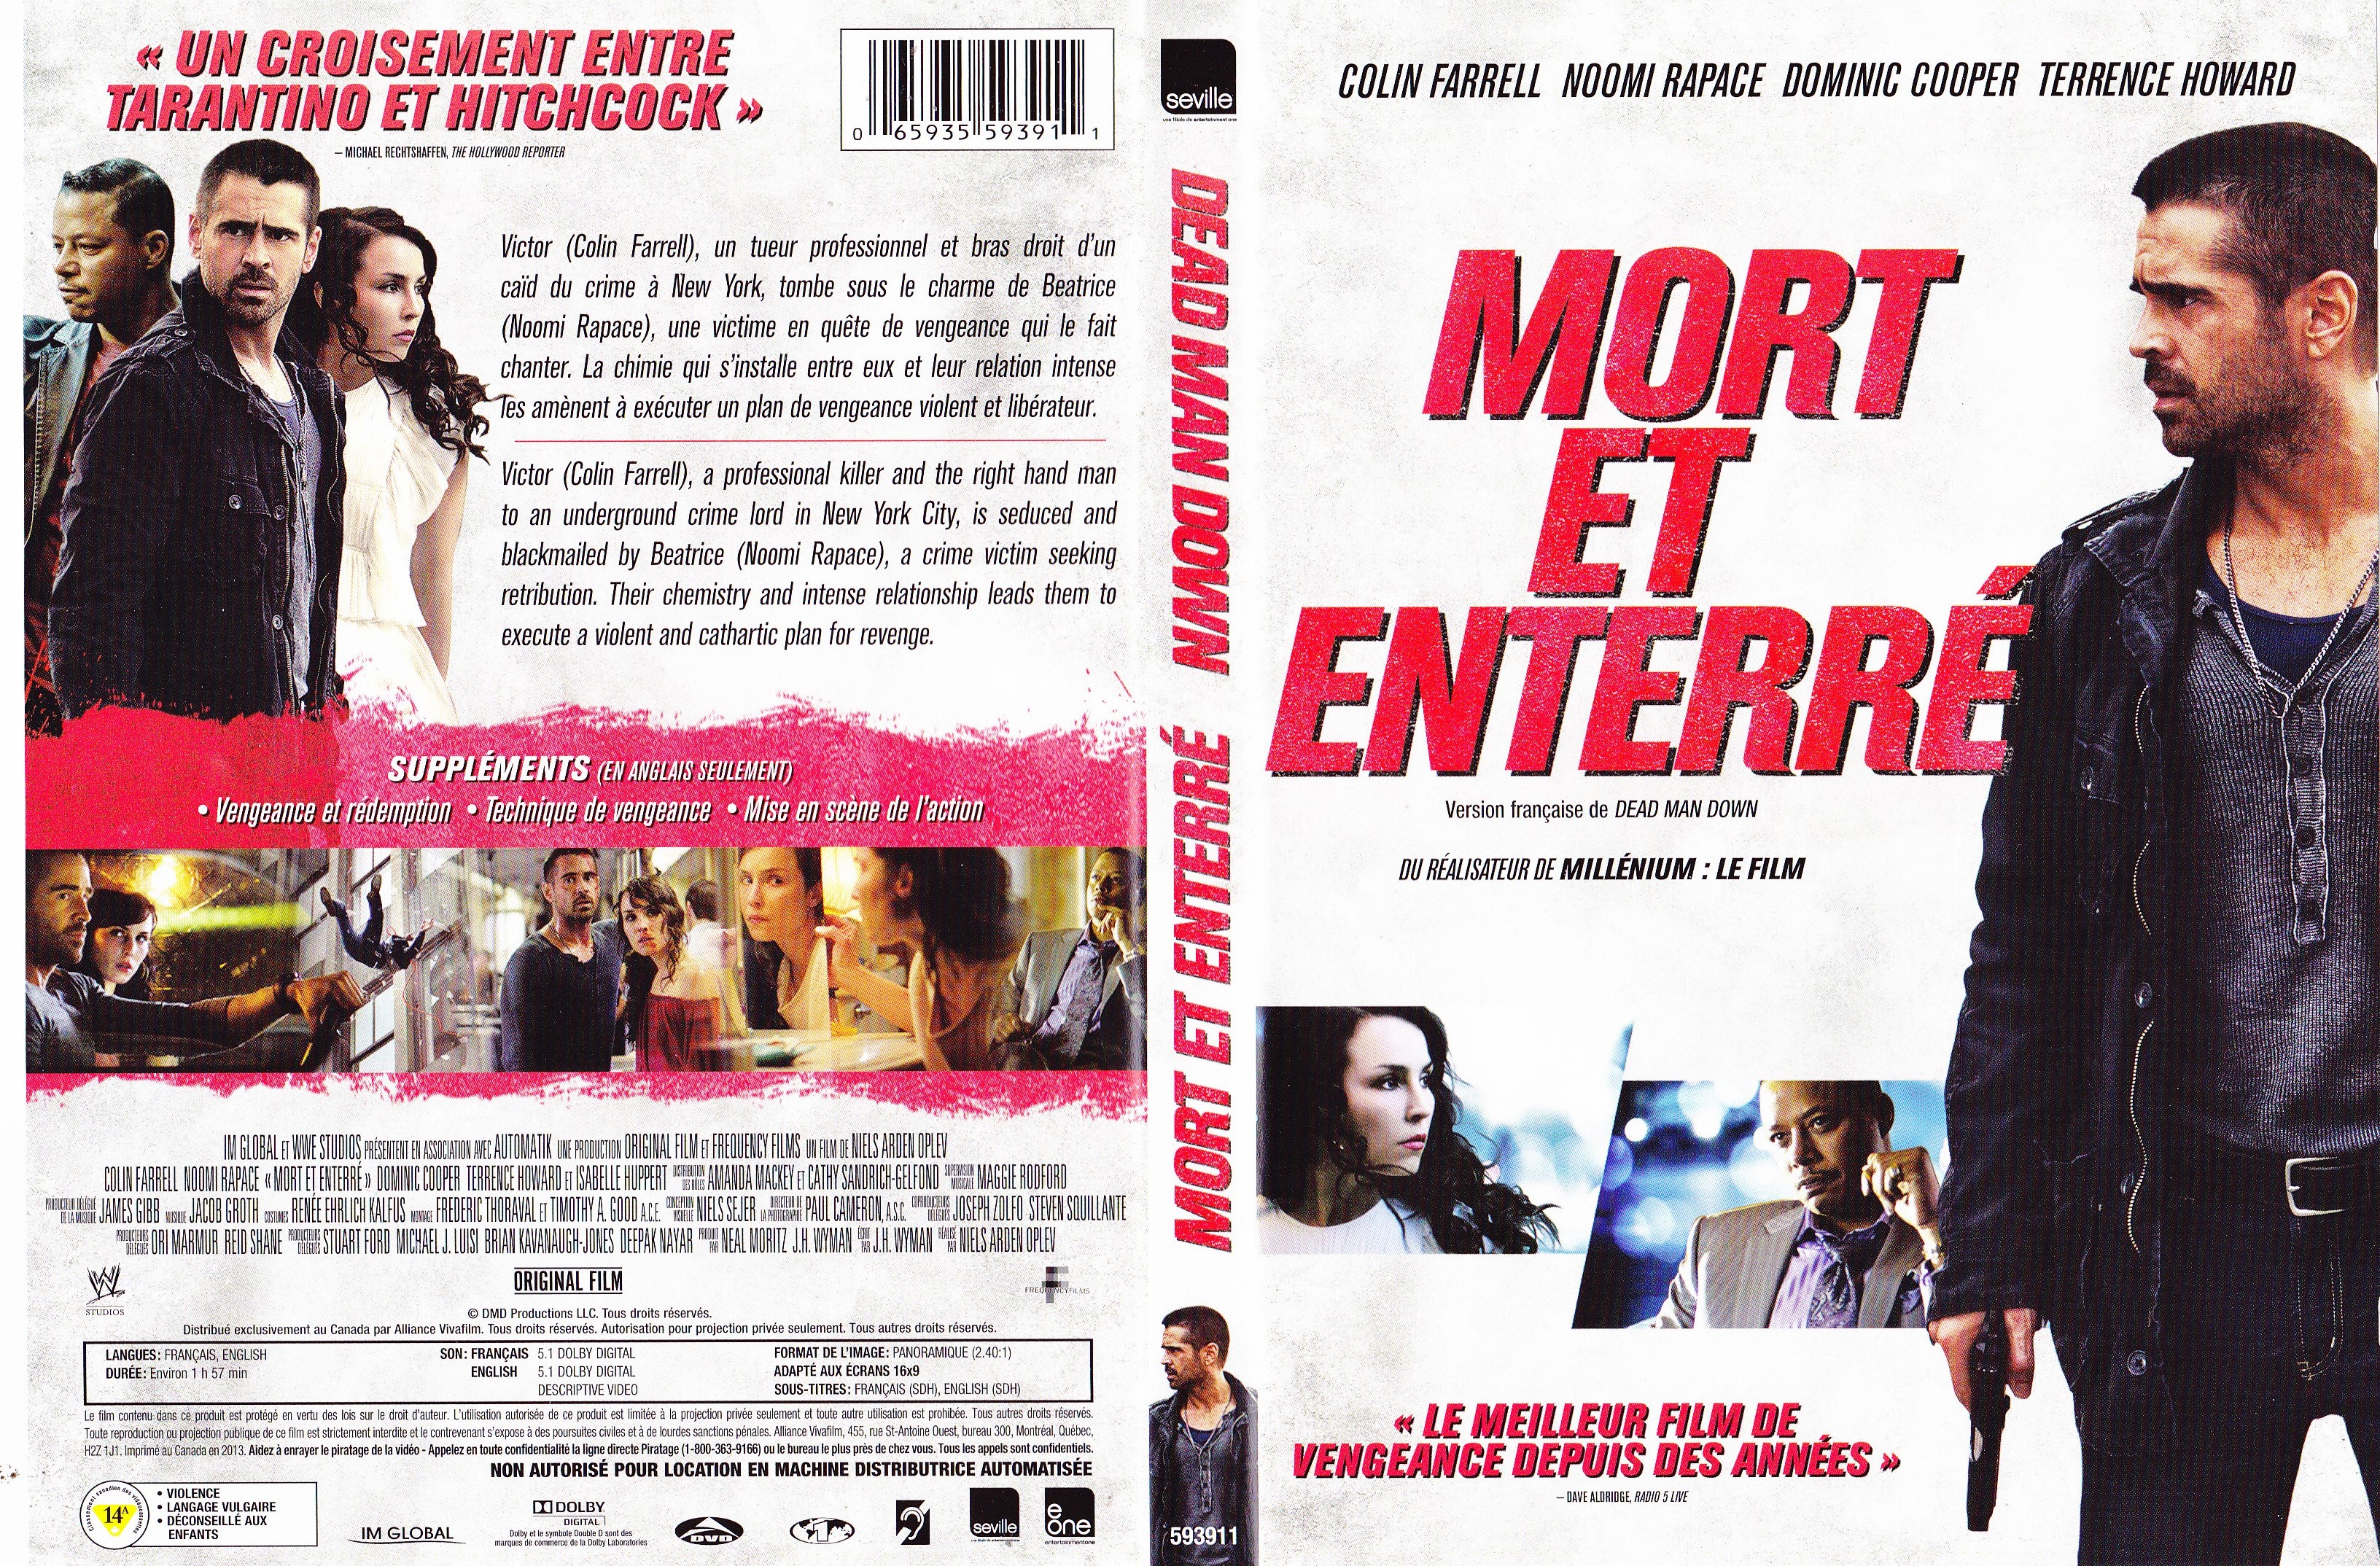 Jaquette DVD Mort et enterr - Dead man down (Canadienne)